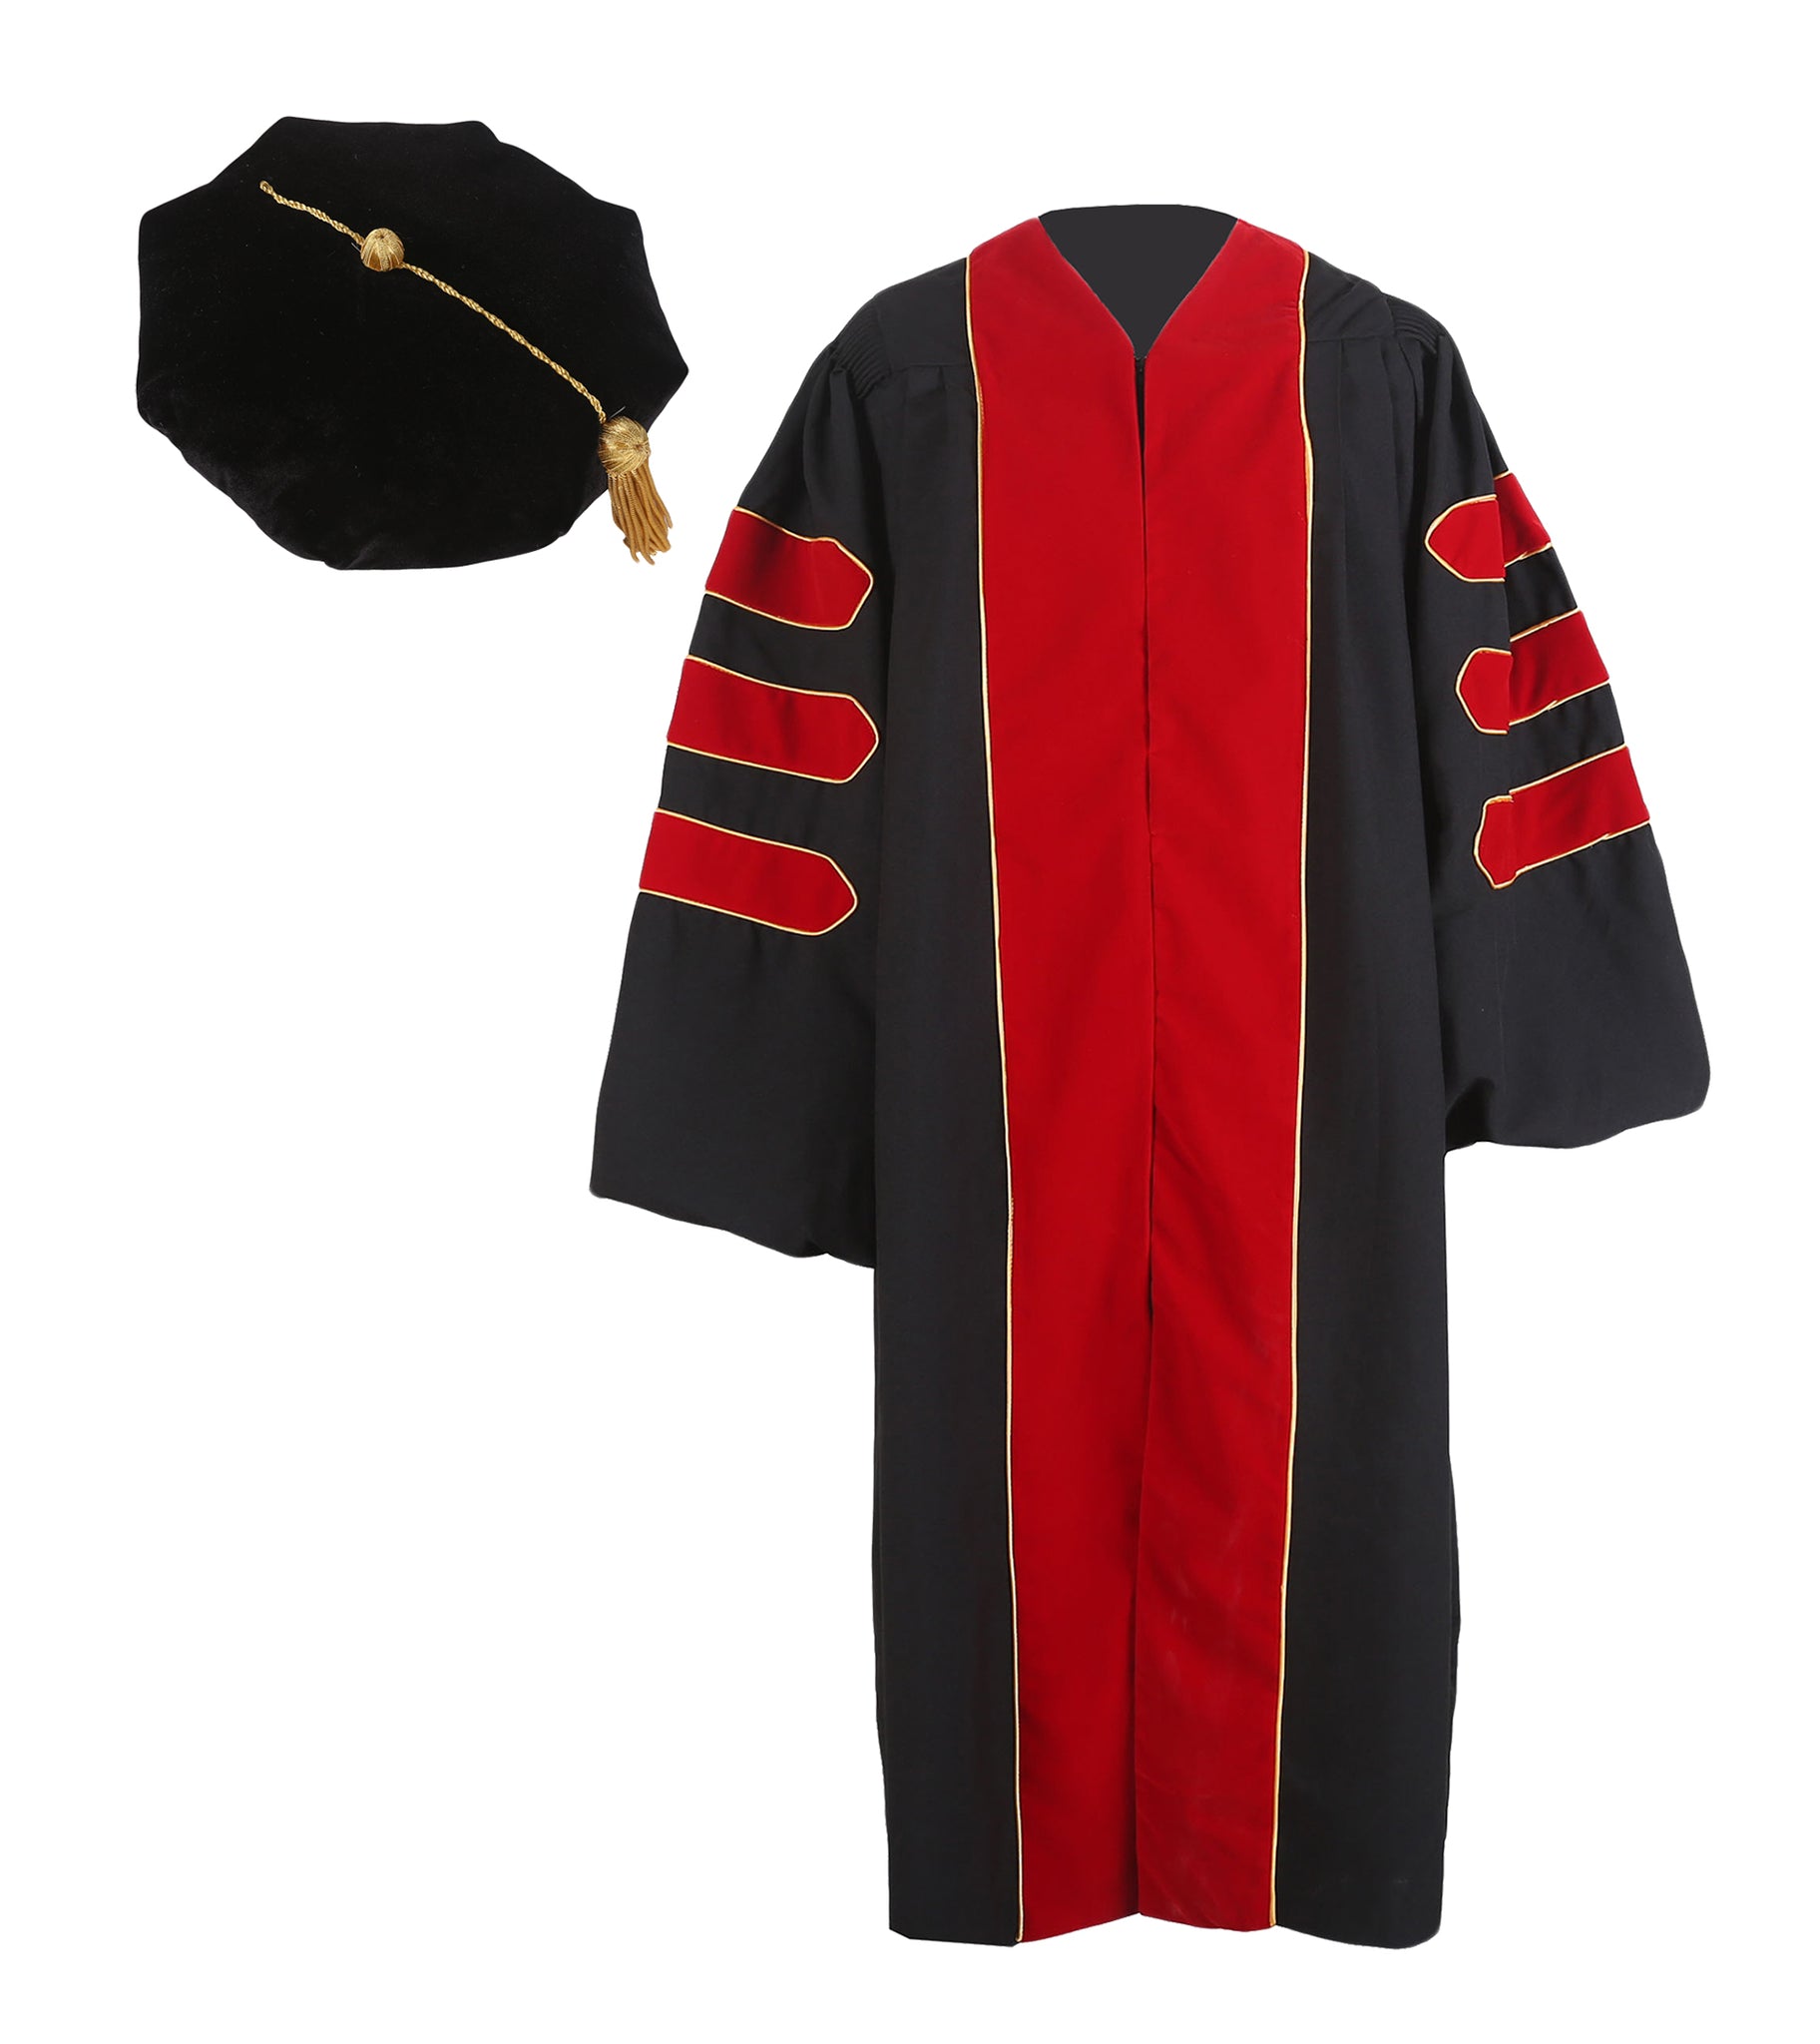 mit phd graduation gown